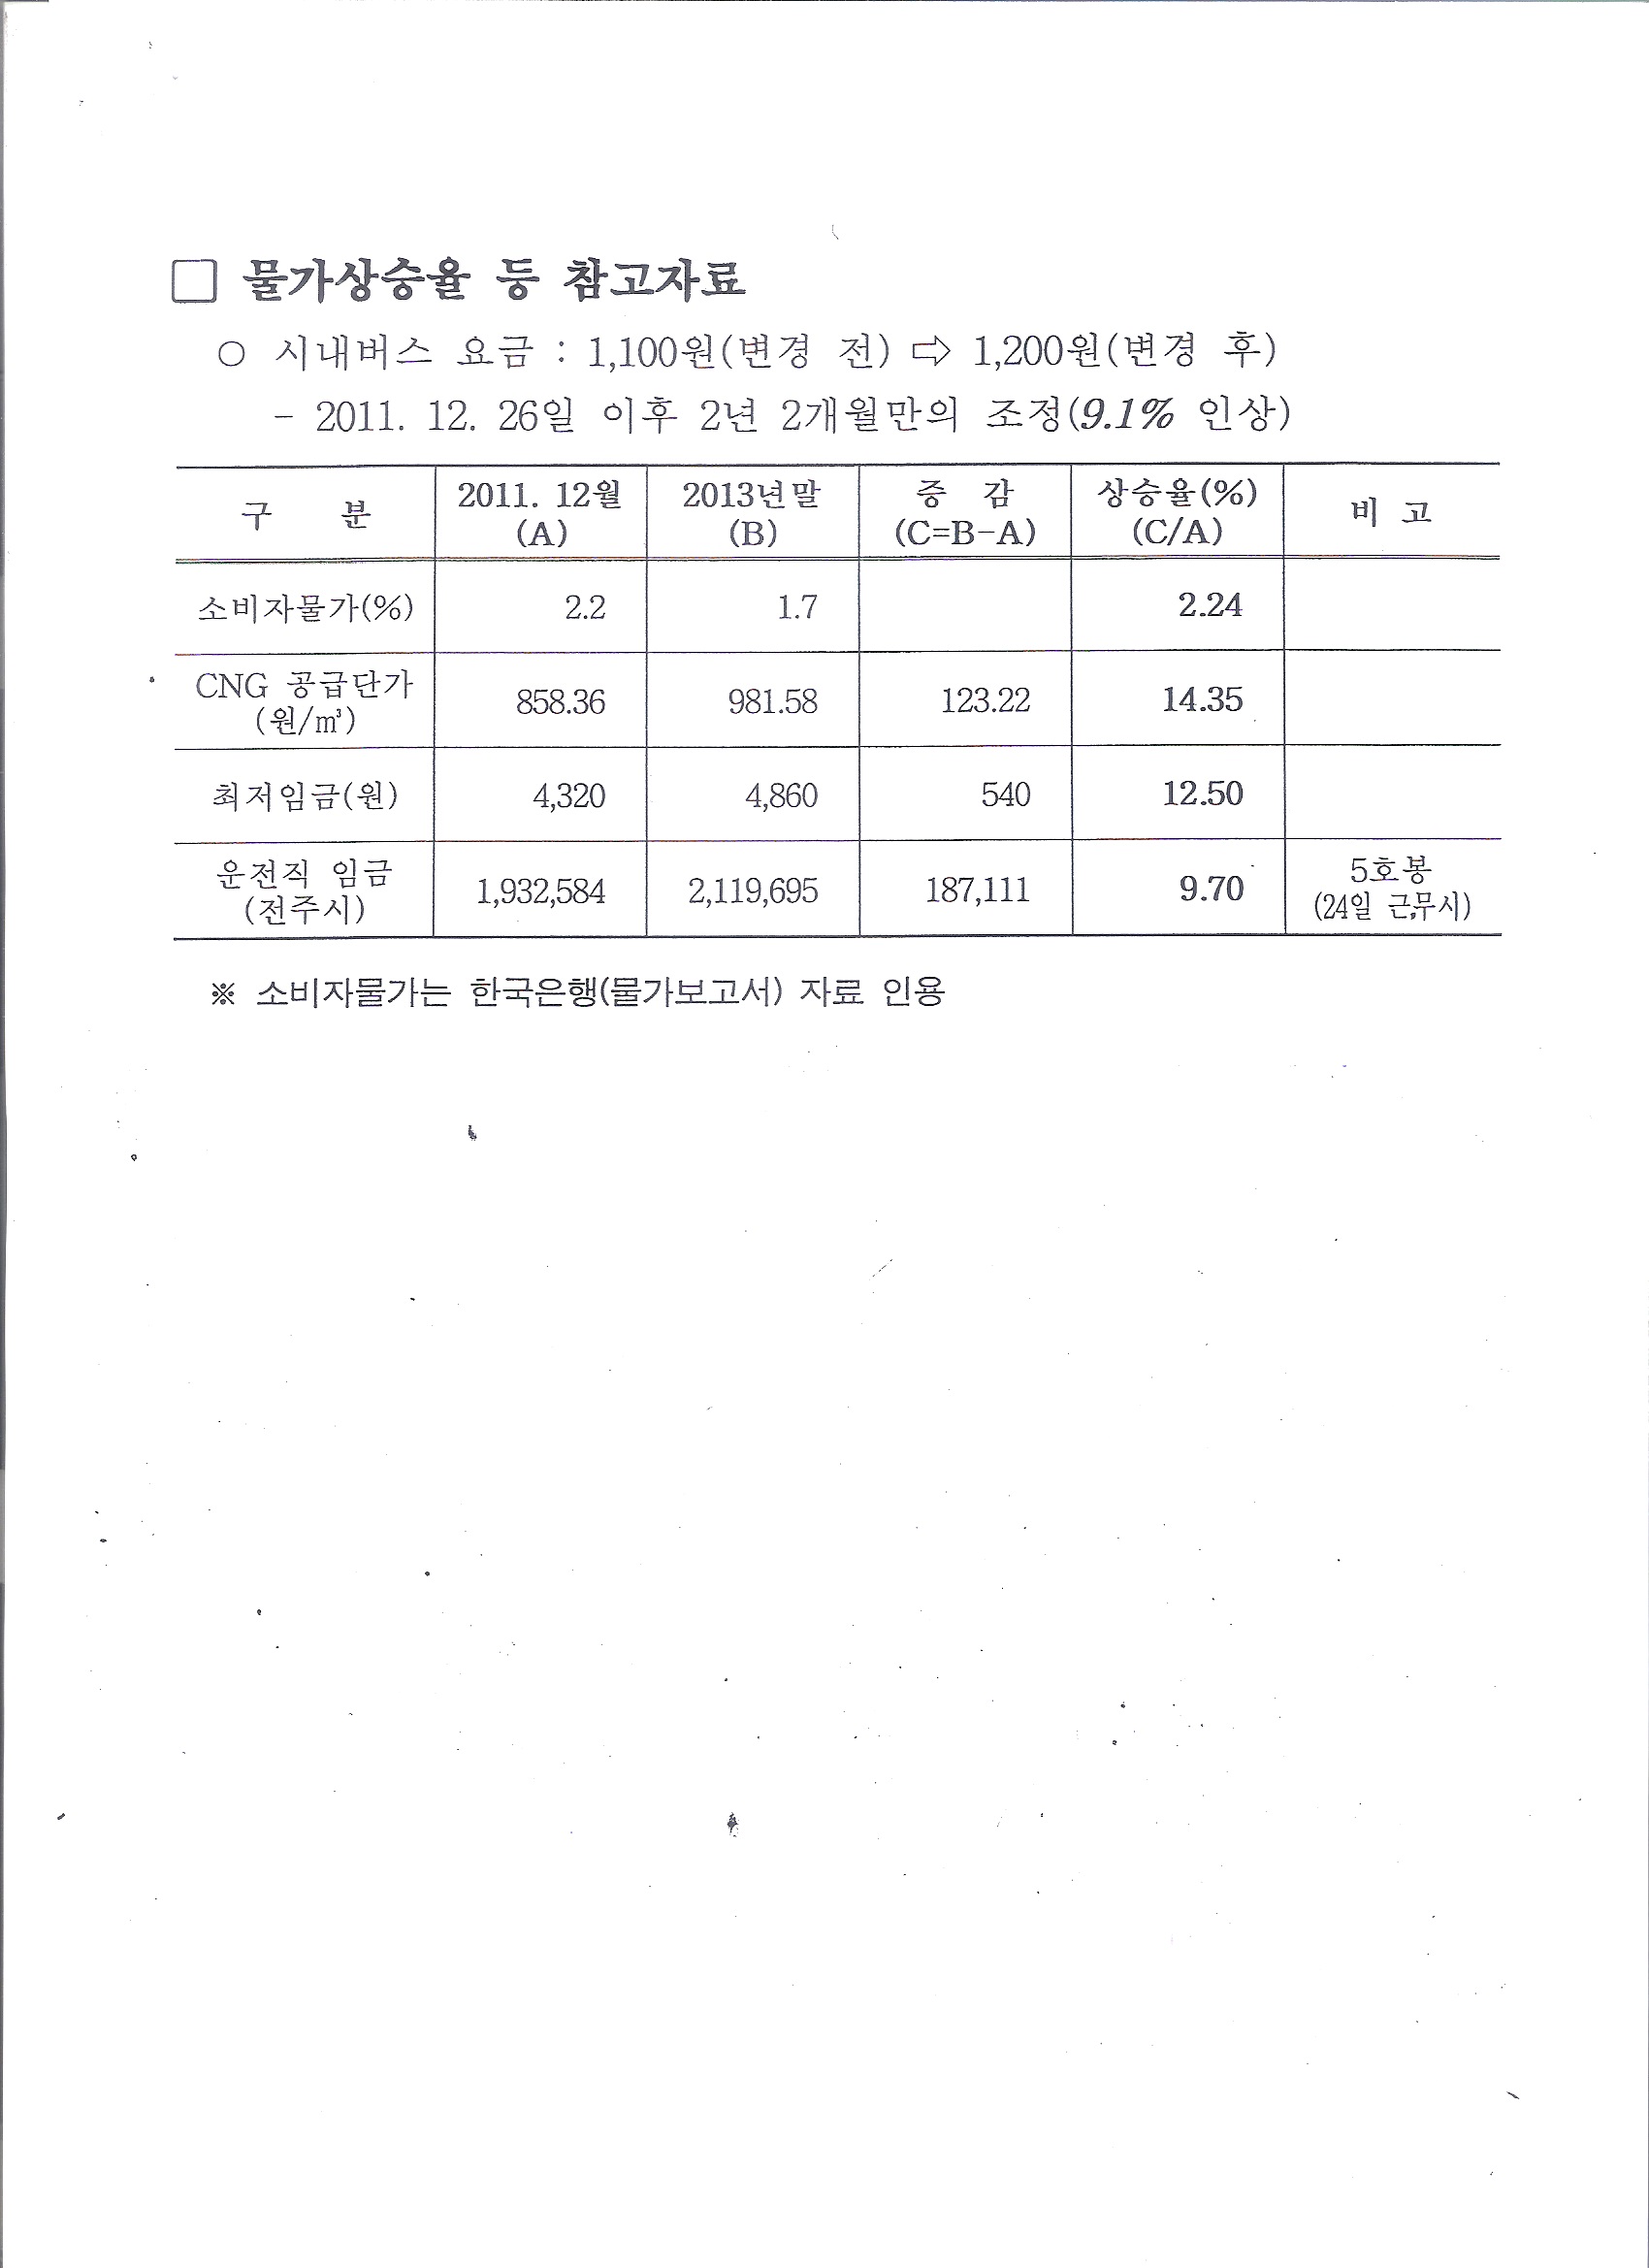 버스요금_전라북도 대중교통과-2551(2014.1.29)호 6.jpg